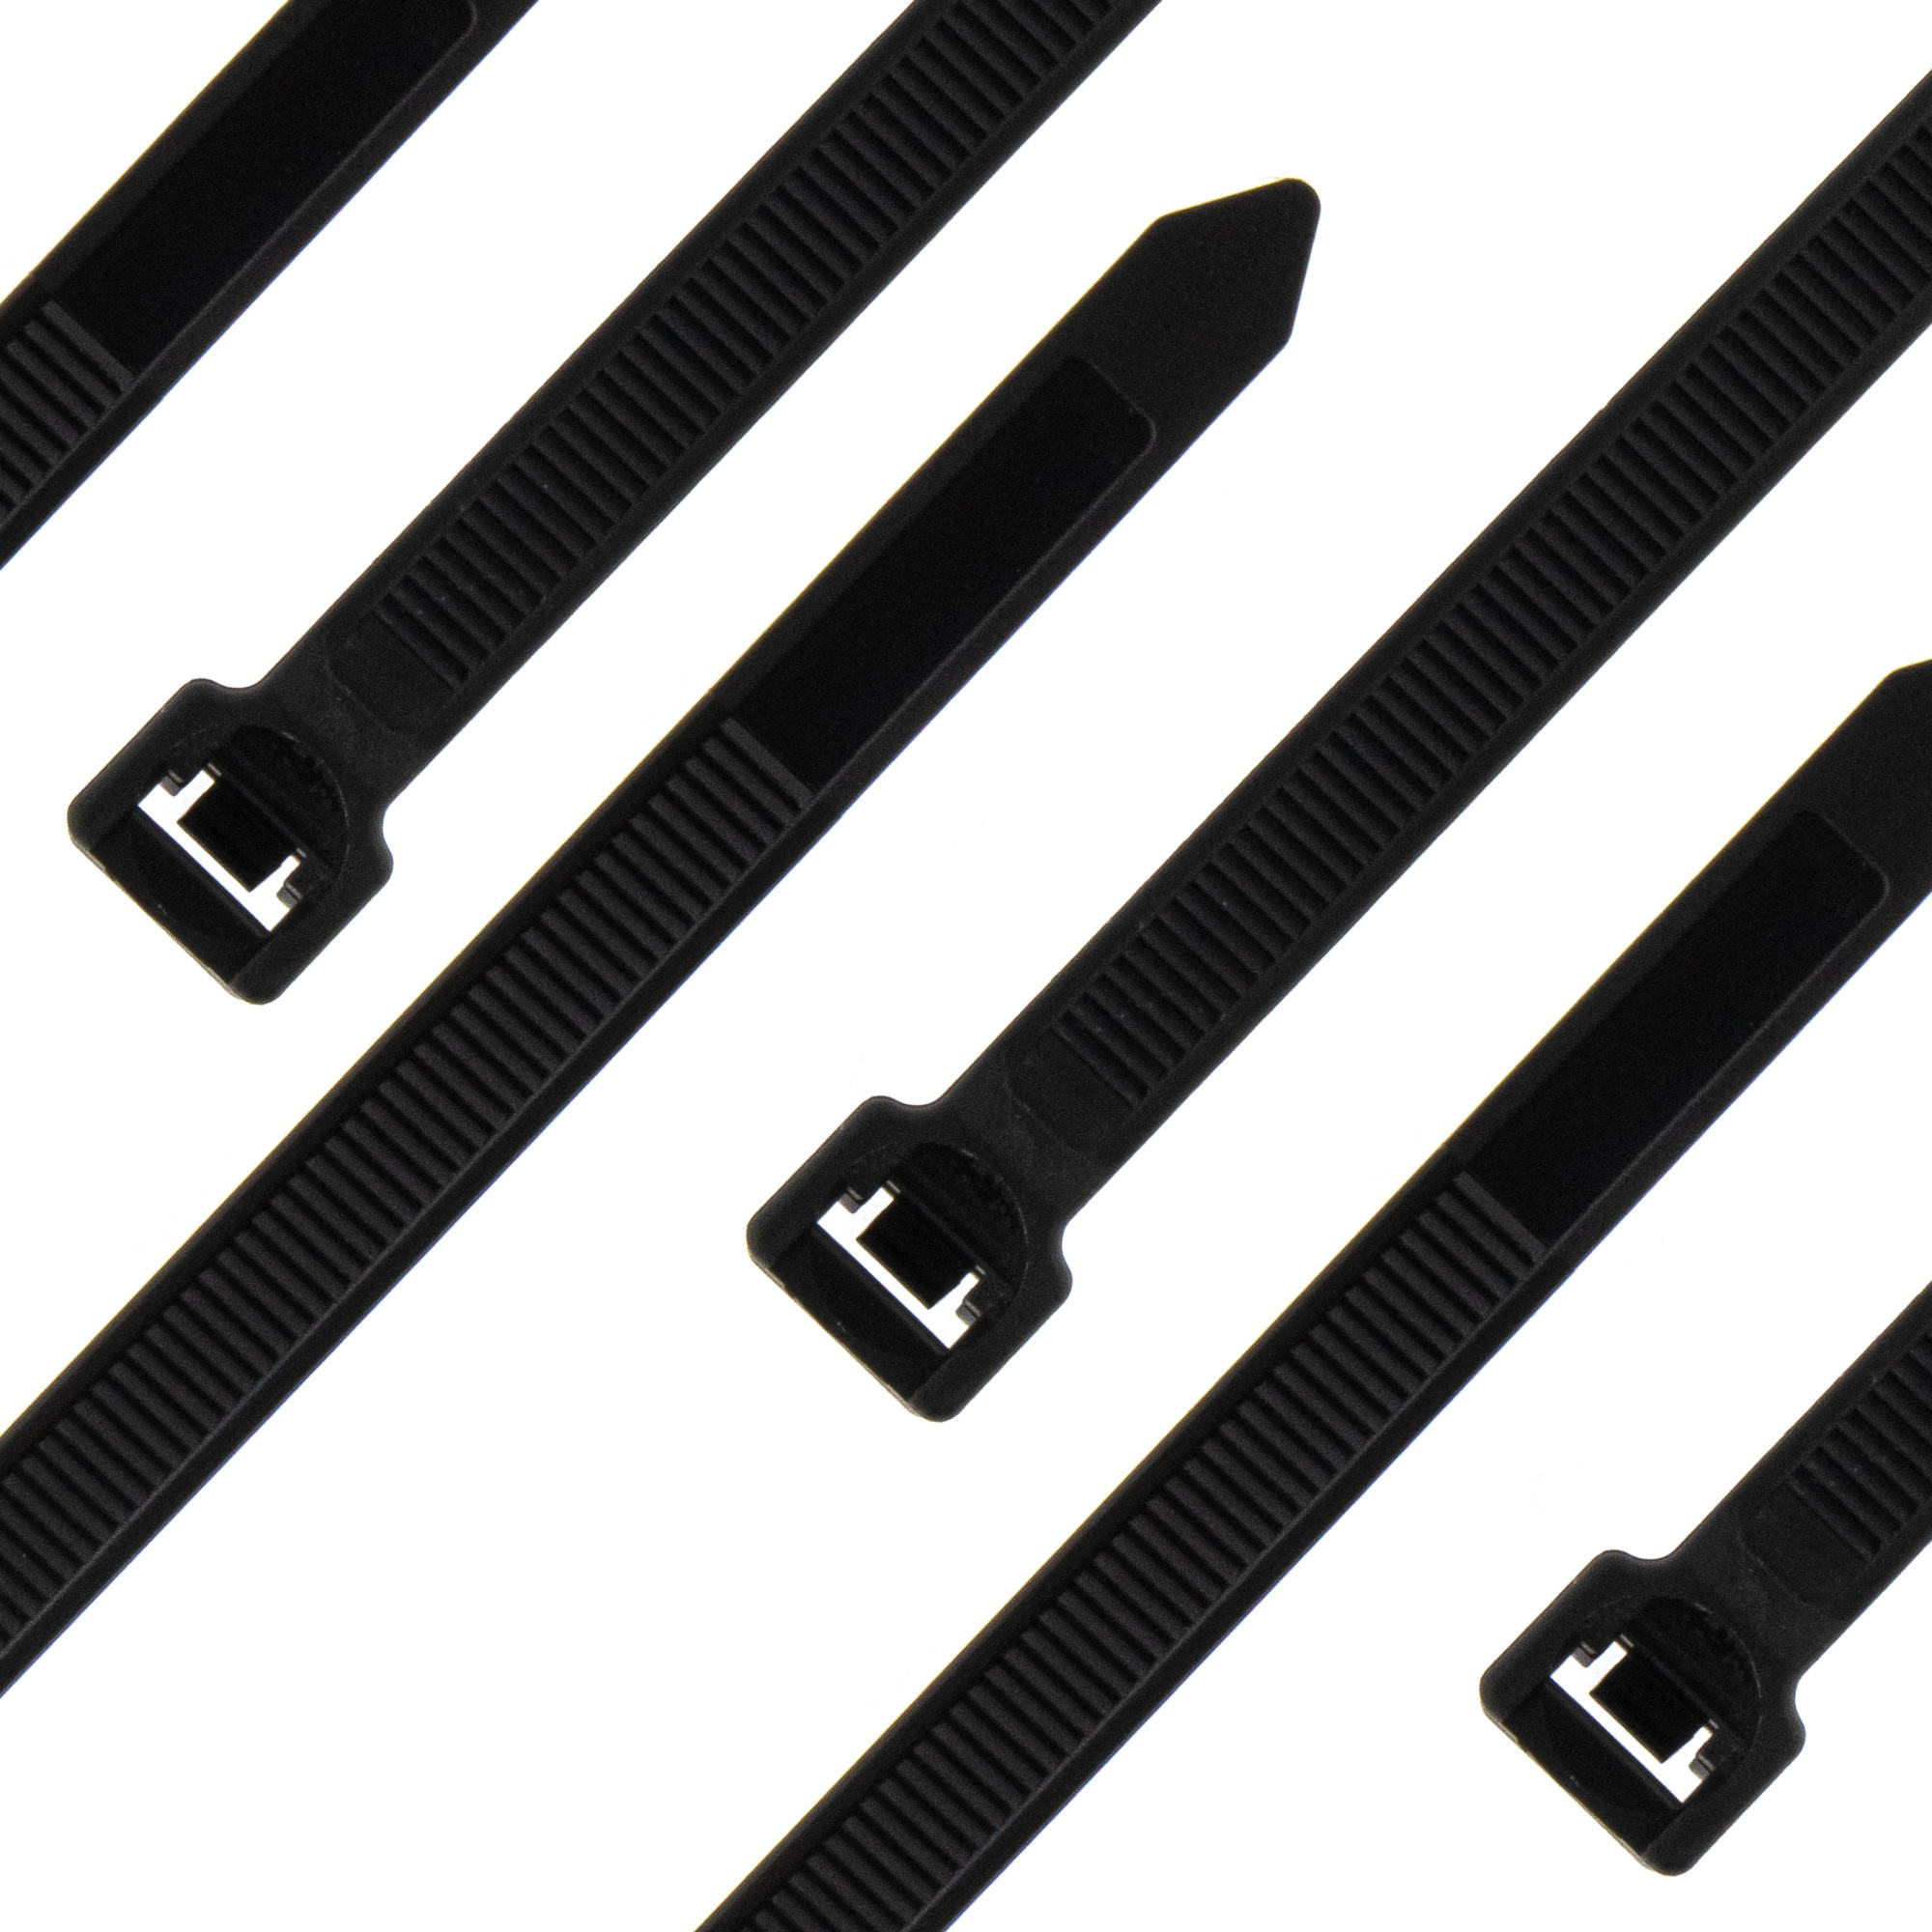 Cable tie releasable 450 x 9,0mm, black, 100PCS